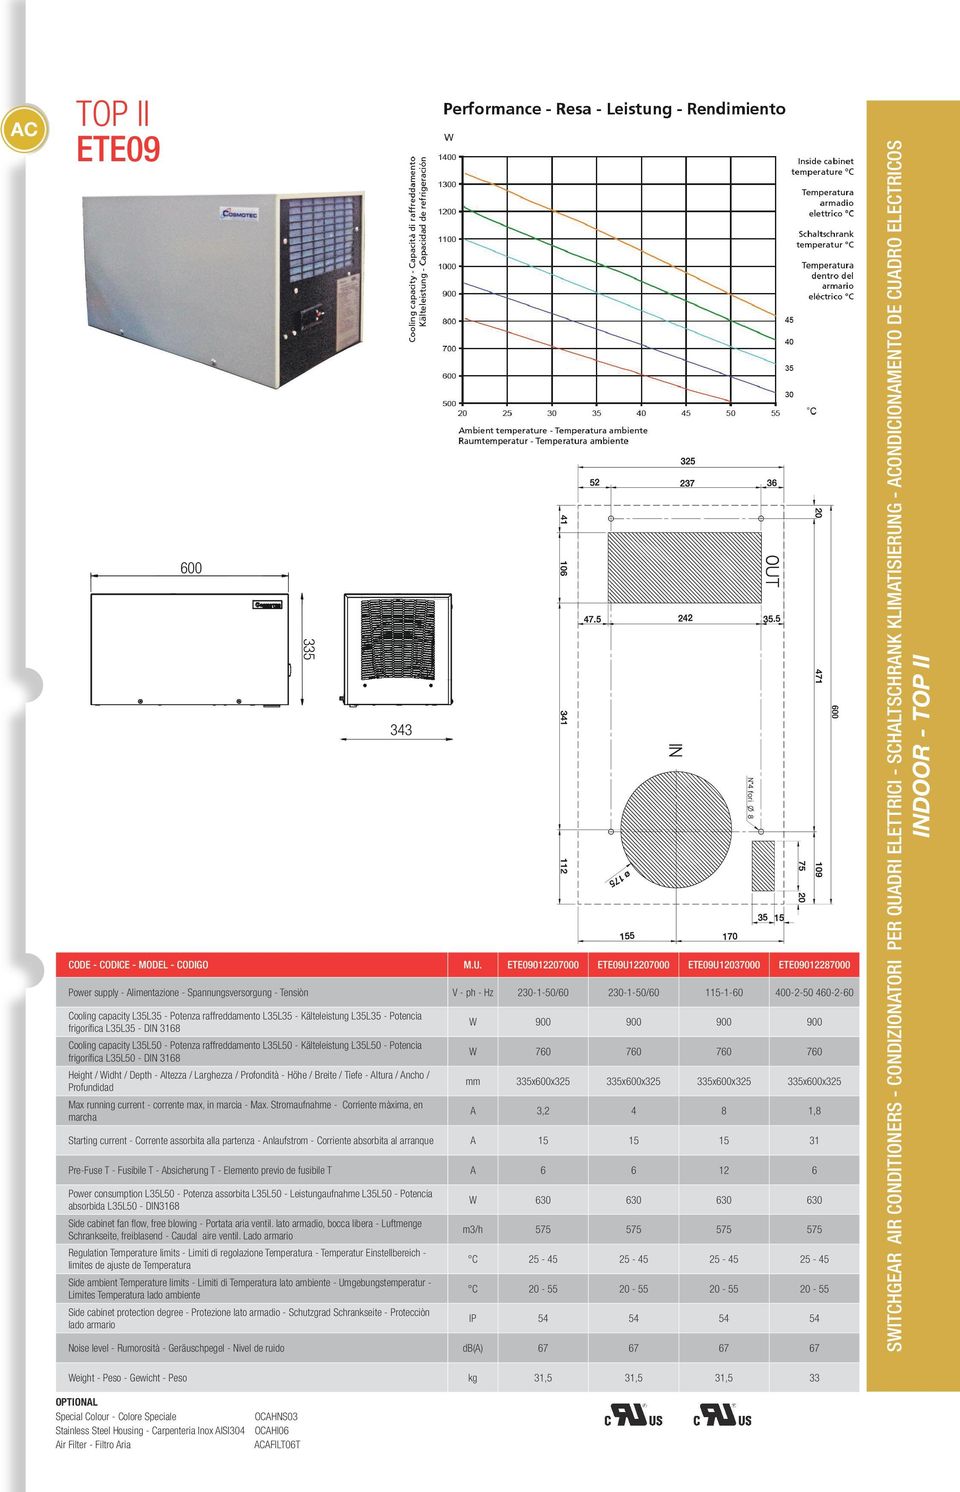 L35L35 - Potencia frigorífica L35L35 - DIN 3168 - Kälteleistung L35L50 - Potencia frigorífica L35L50 - DIN 3168 - Höhe / Breite / Tiefe - Altura / Ancho / Profundidad - Max.